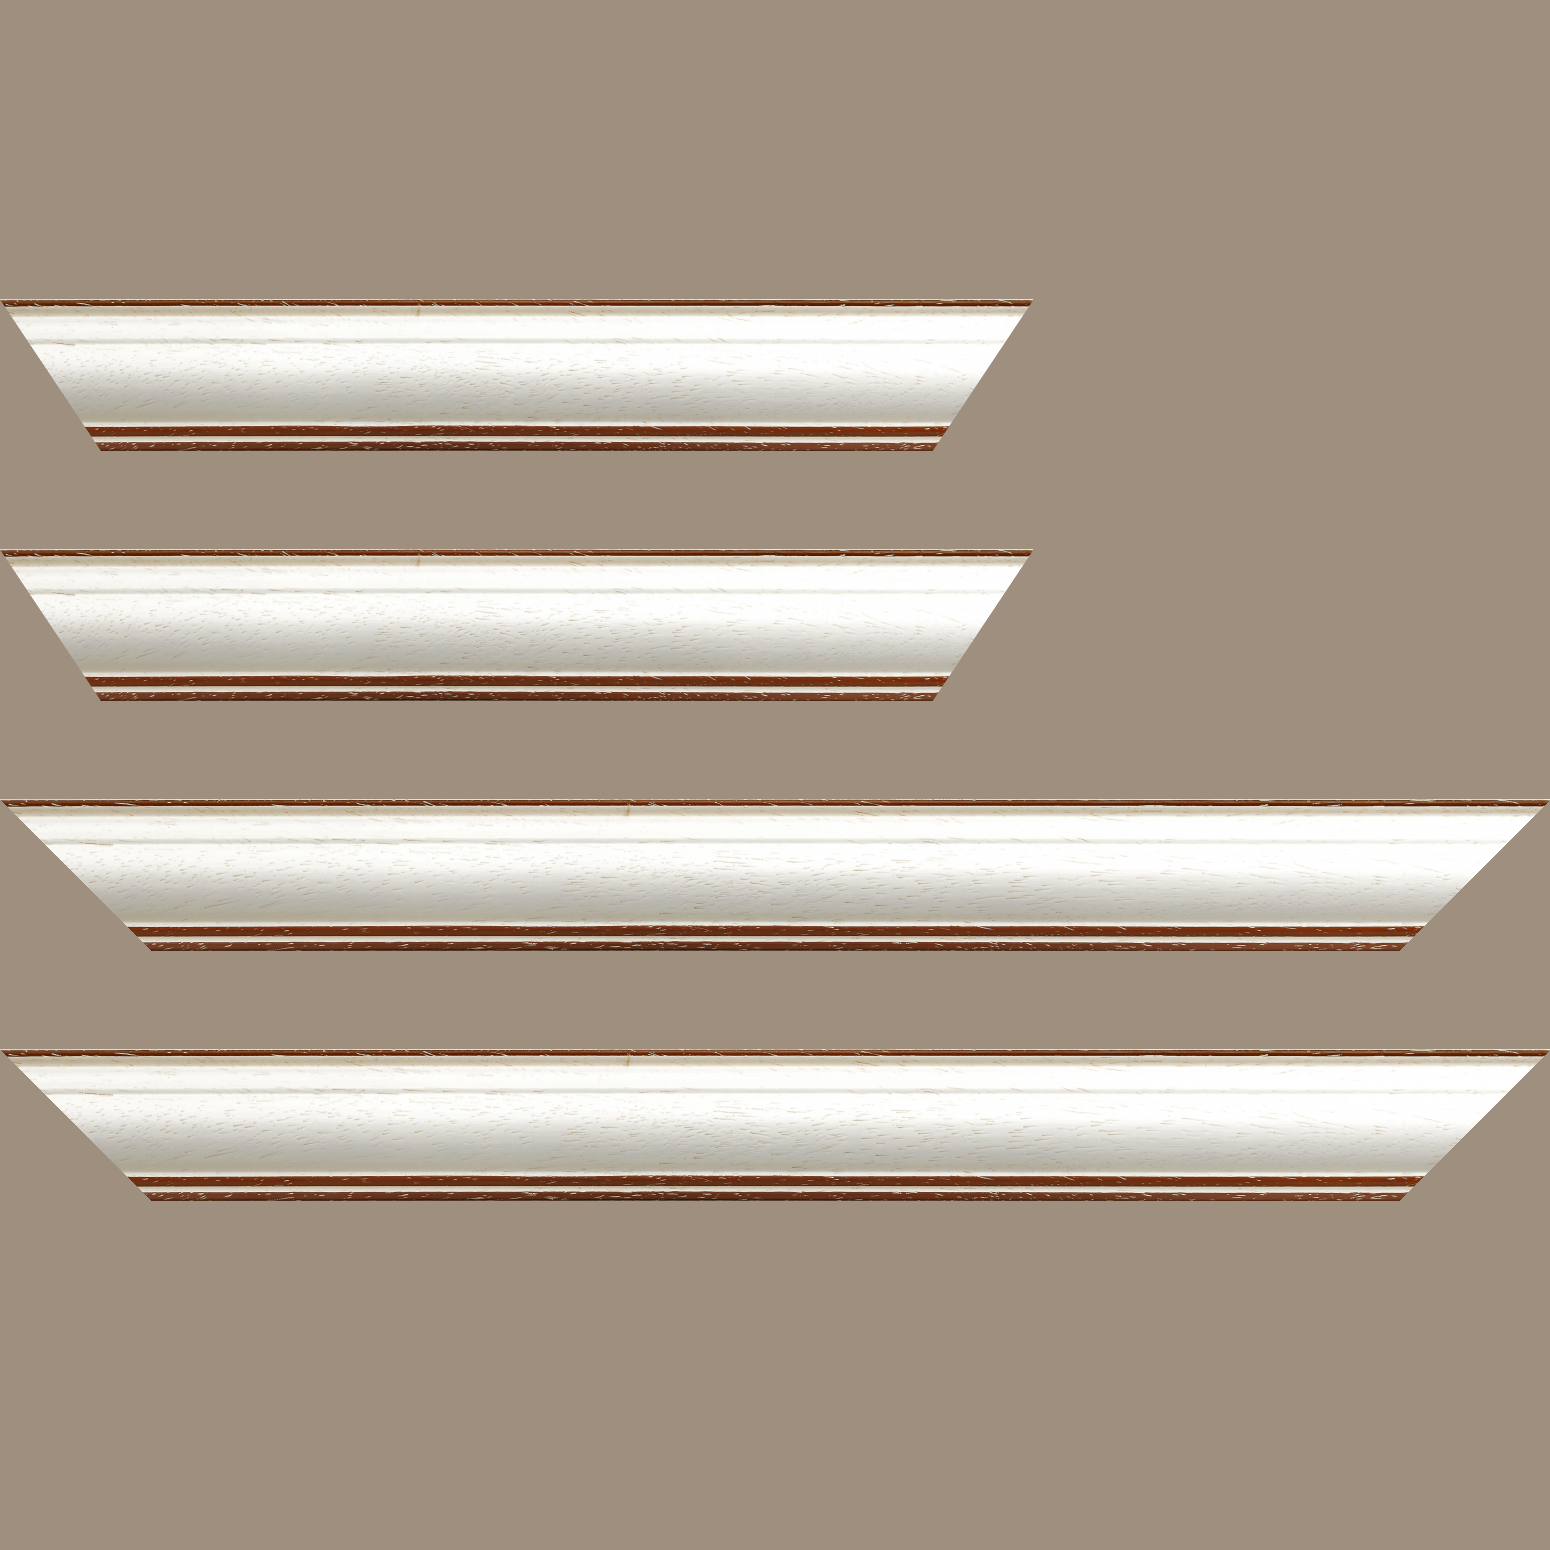 Baguette bois profil bombé largeur 5cm couleur blanchie satiné filet marron foncé - 84.1x118.9